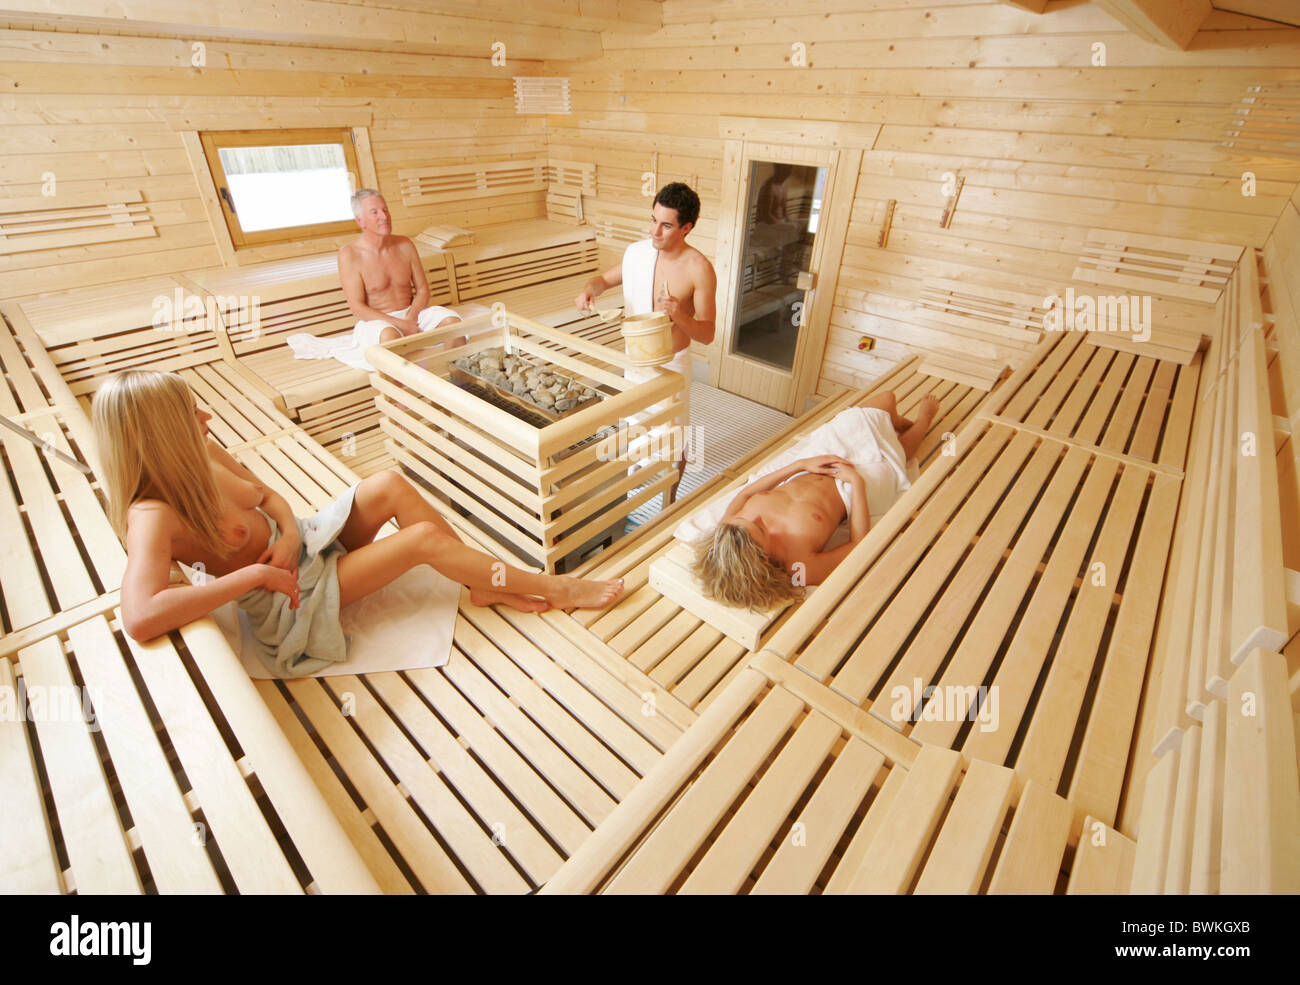 Sauna Im Inneren Gruppe Wellness Holz Holzsauna Hütte Person Gesund 